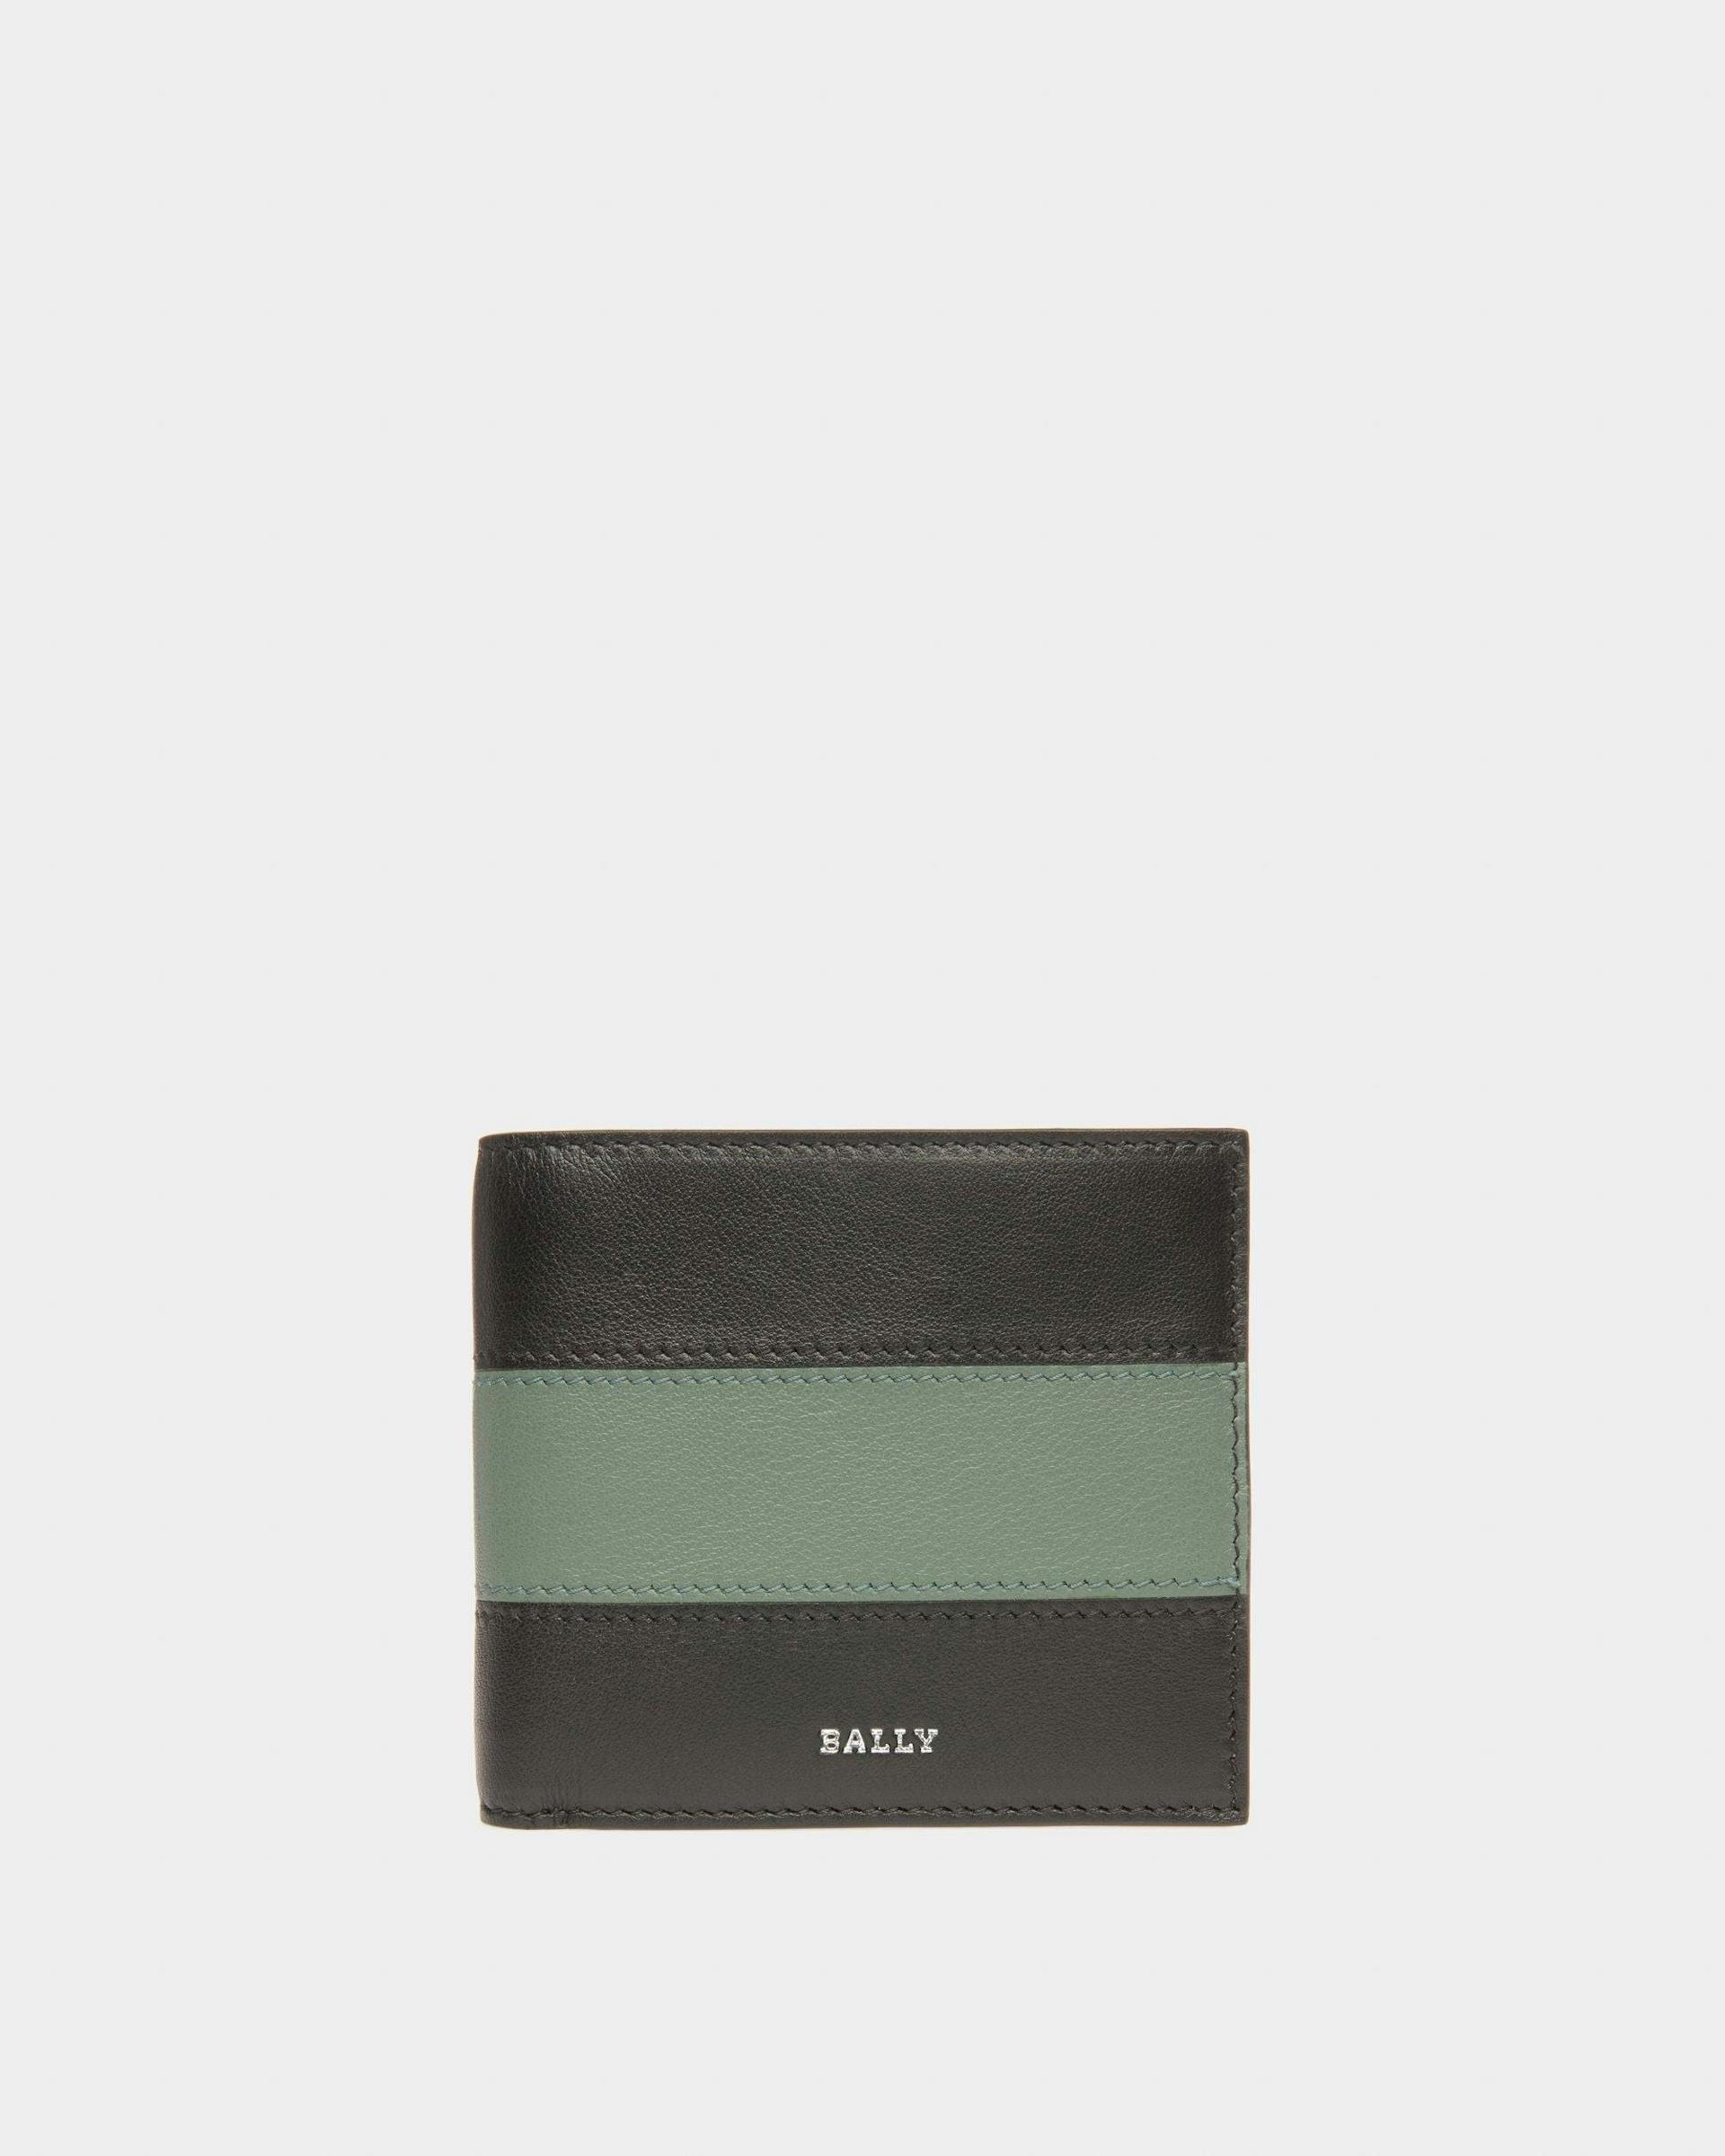 Brasai Leather Wallet In Black & Green - Men's - Bally - 01